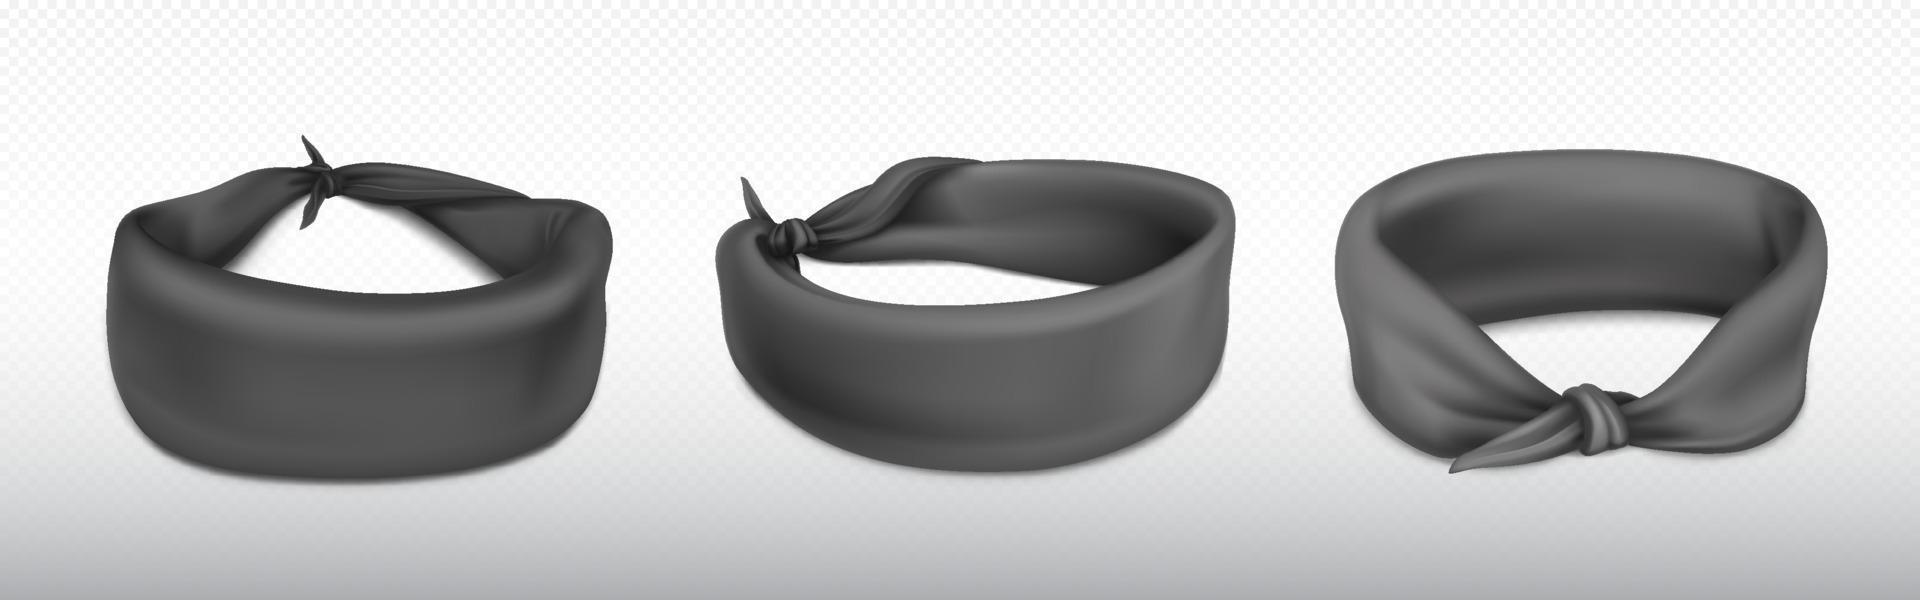 pannband, bandana för huvud eller handled, svart trasa vektor